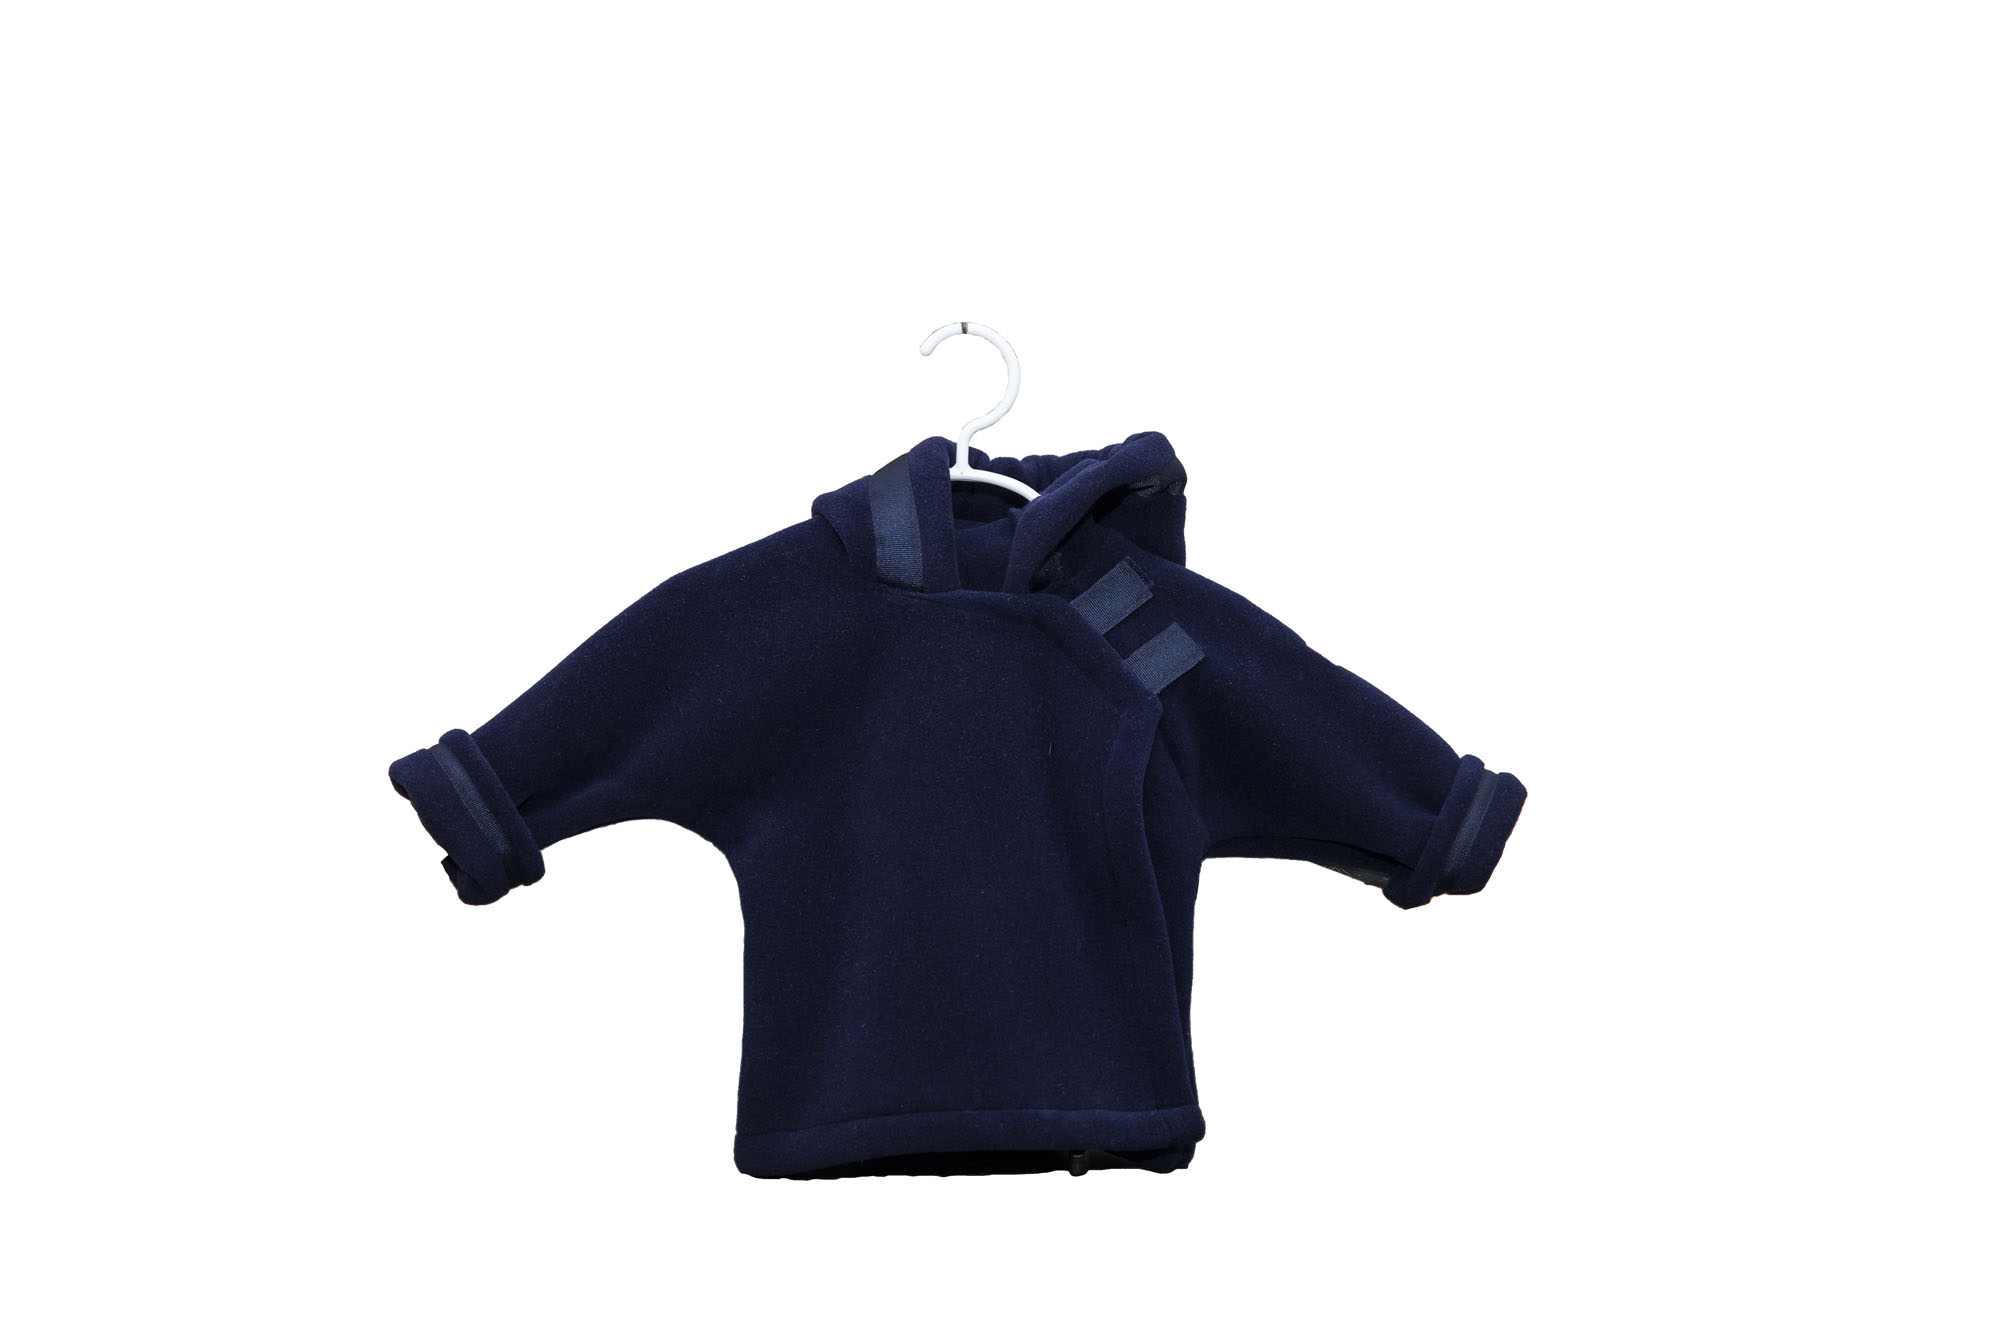 Monogrammed Fleece Jacket {Navy}